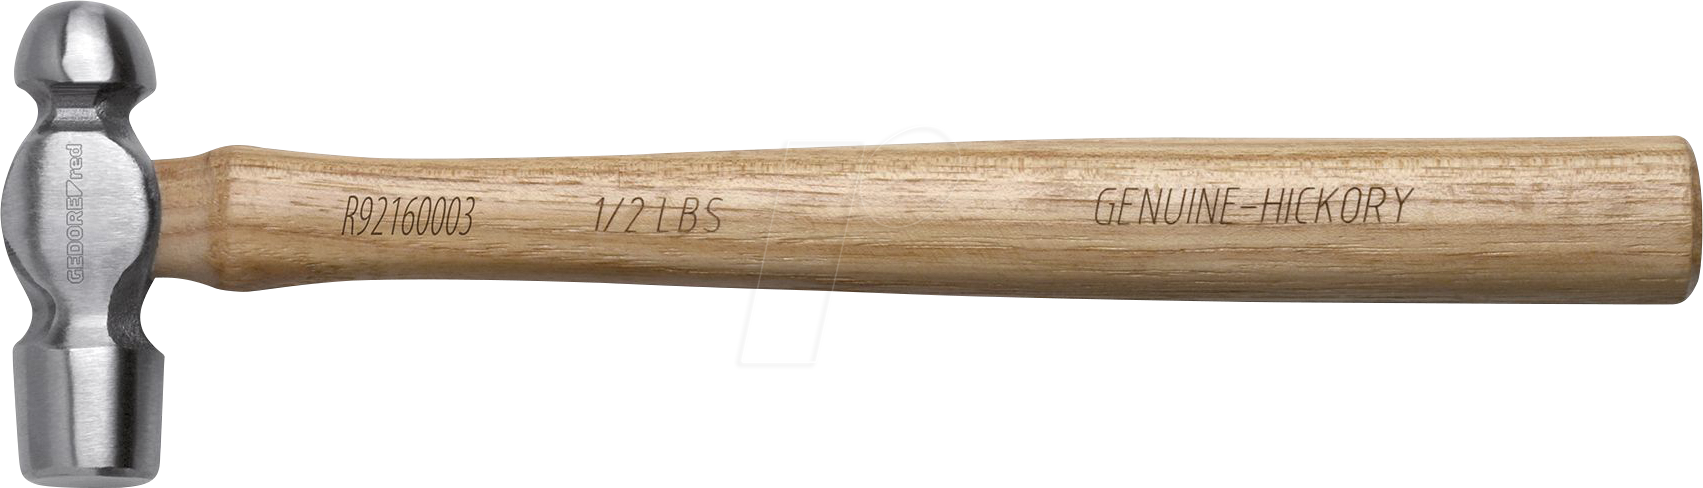 GEDO R92160003 - Schlosserhammer, englisch, 1/2lbs, Holzgriff von GEDORE WERKZEUG